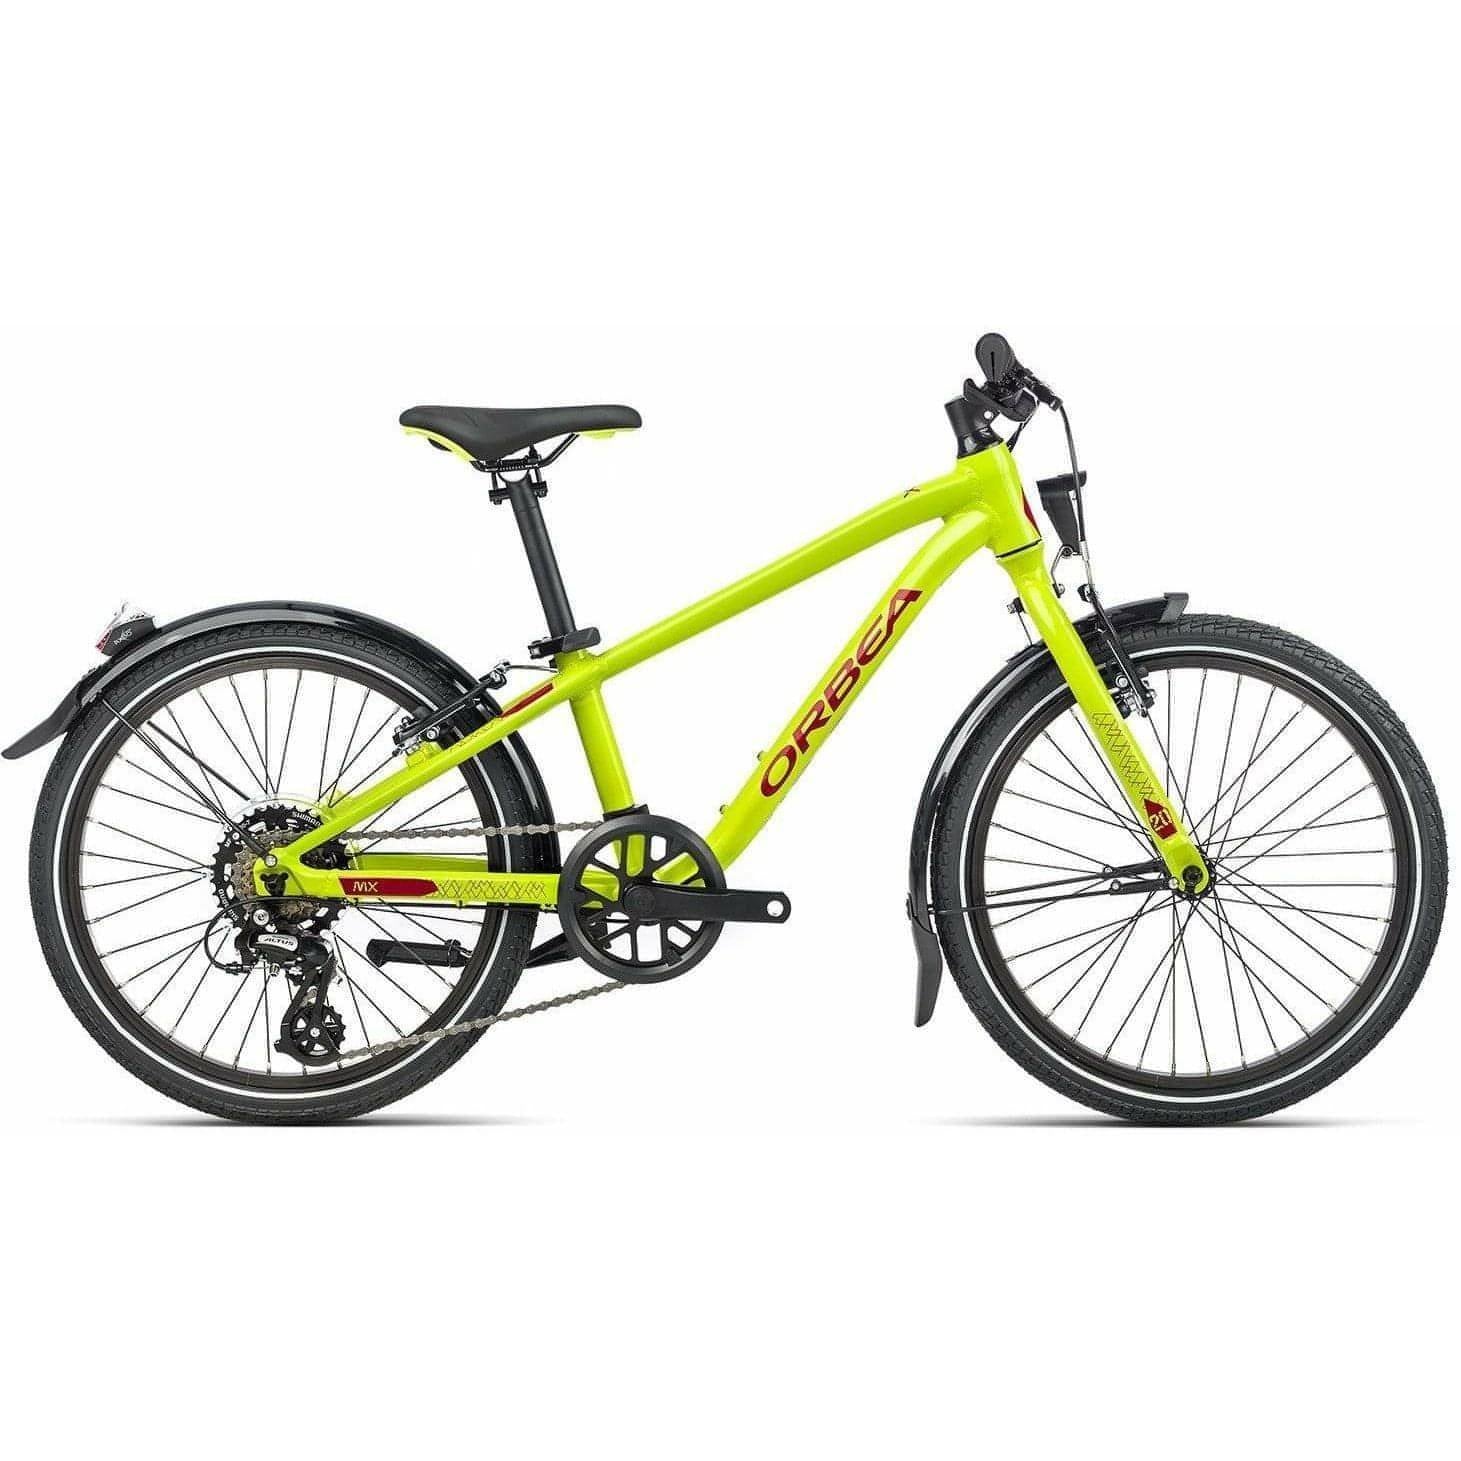 Orbea MX 20 Park Junior Bike 2021 - Lime 8434446768750 - Start Fitness